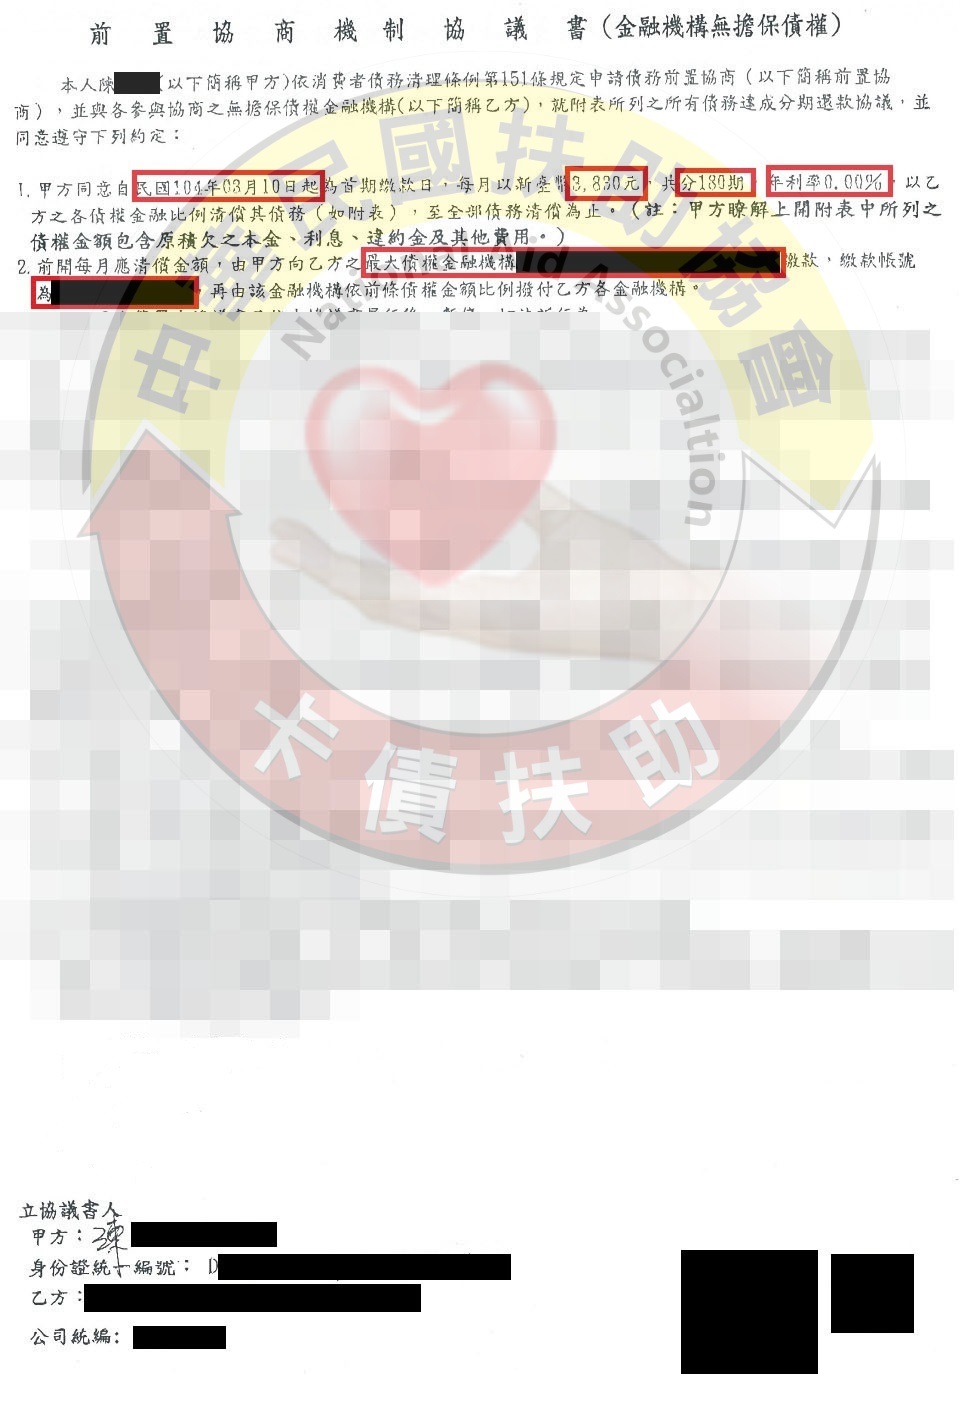 台南陳先生-協商成功依180期0%月付3,830元